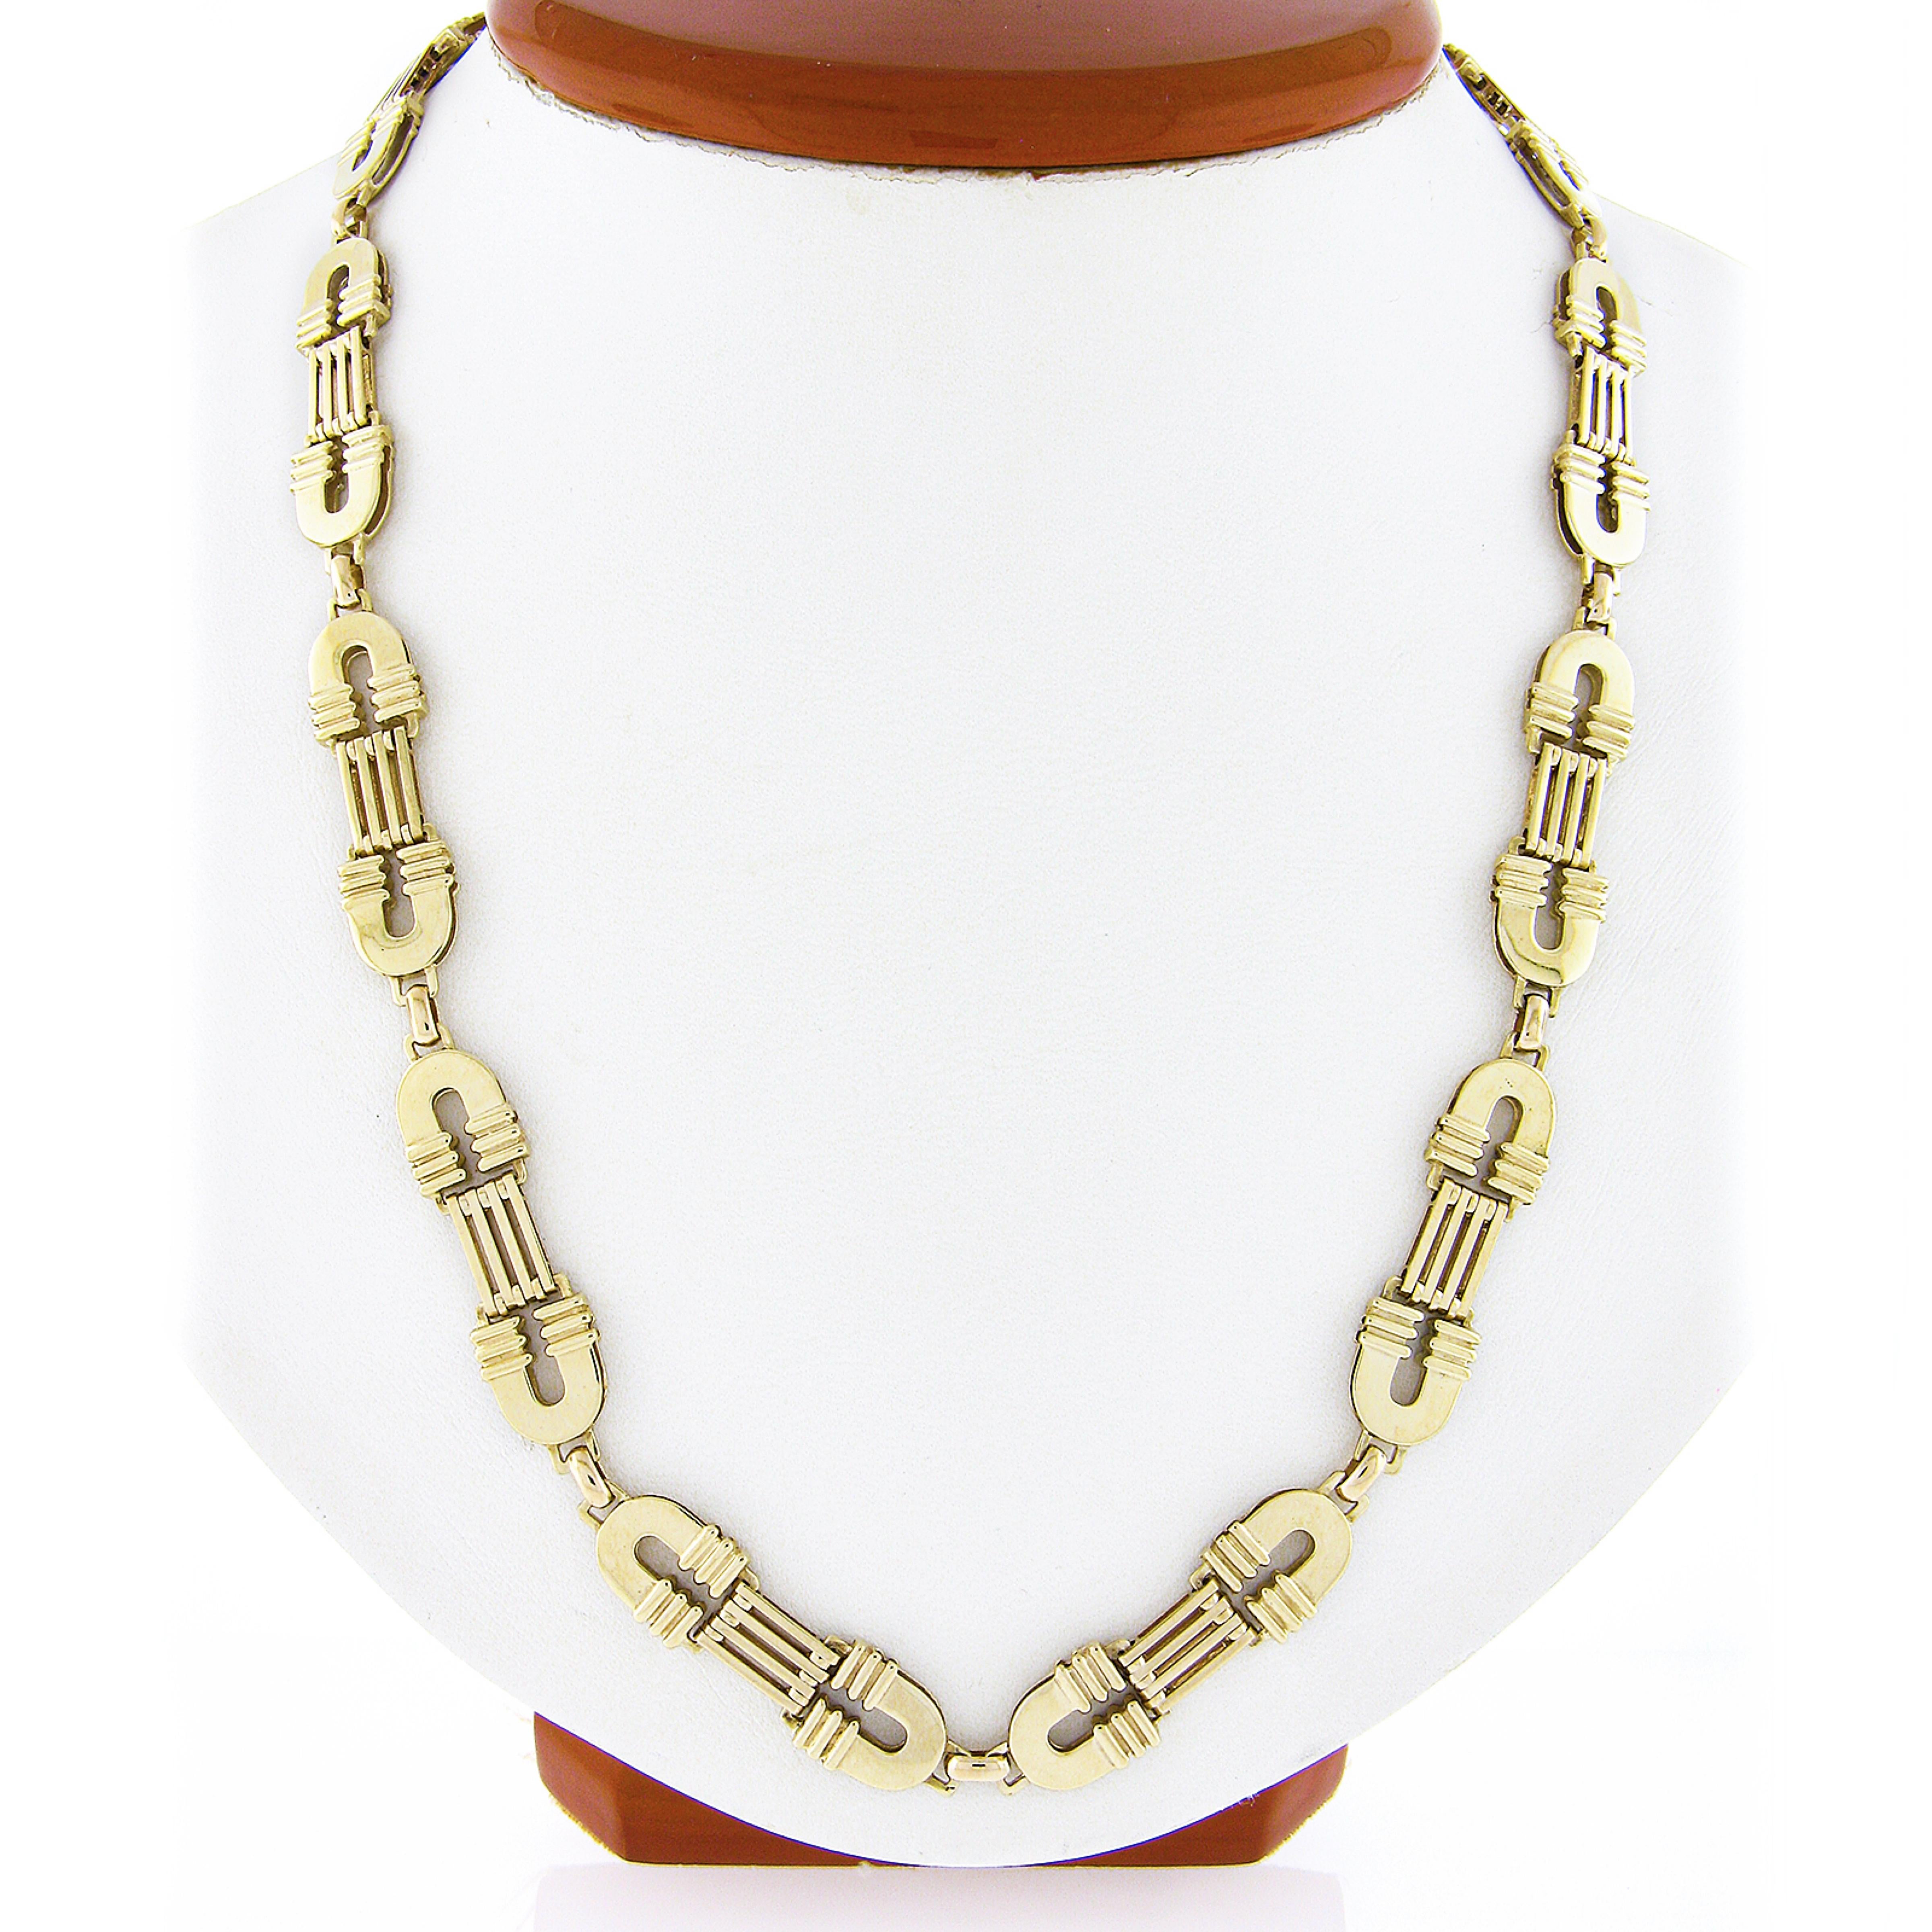 Ce collier fantaisie et de bonne facture a été fabriqué en Italie en or jaune massif 14k. Cette magnifique chaîne fabriquée à la main présente un design unique, composé de maillons flexibles polis qui s'emboîtent les uns dans les autres. Elle